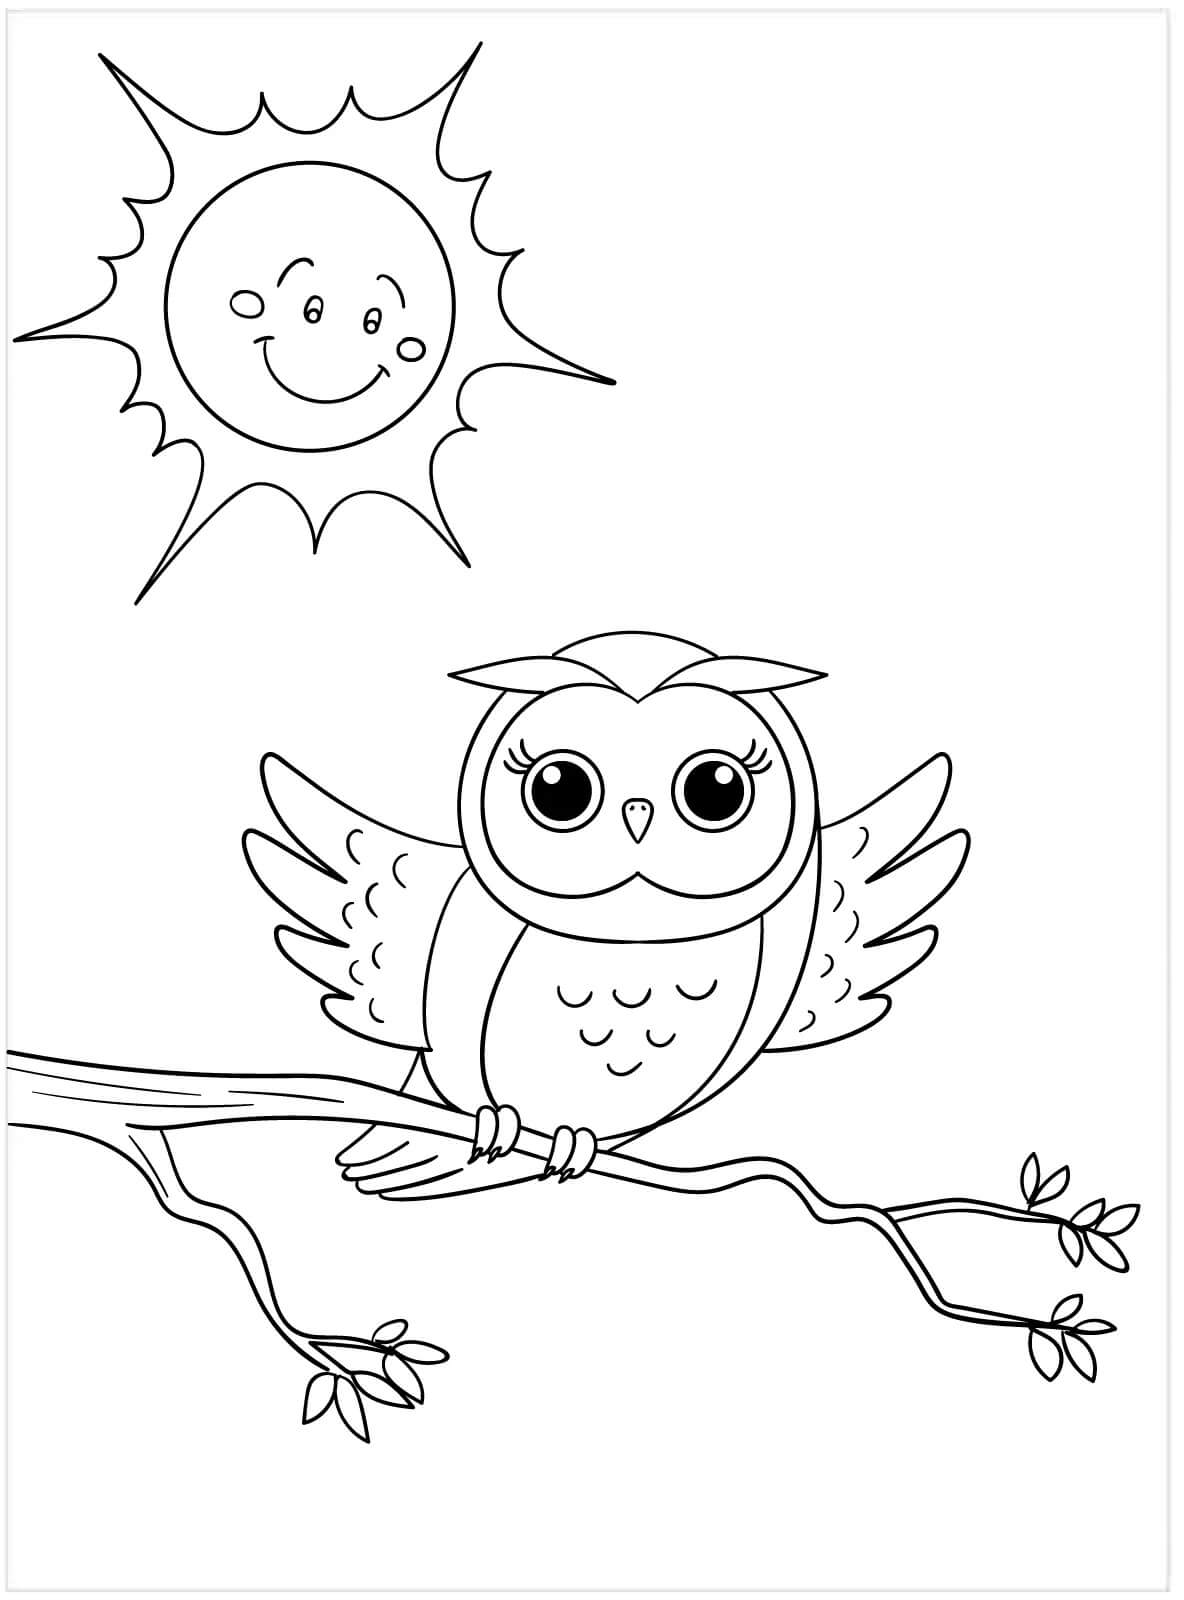 Soleil et Hibou coloring page